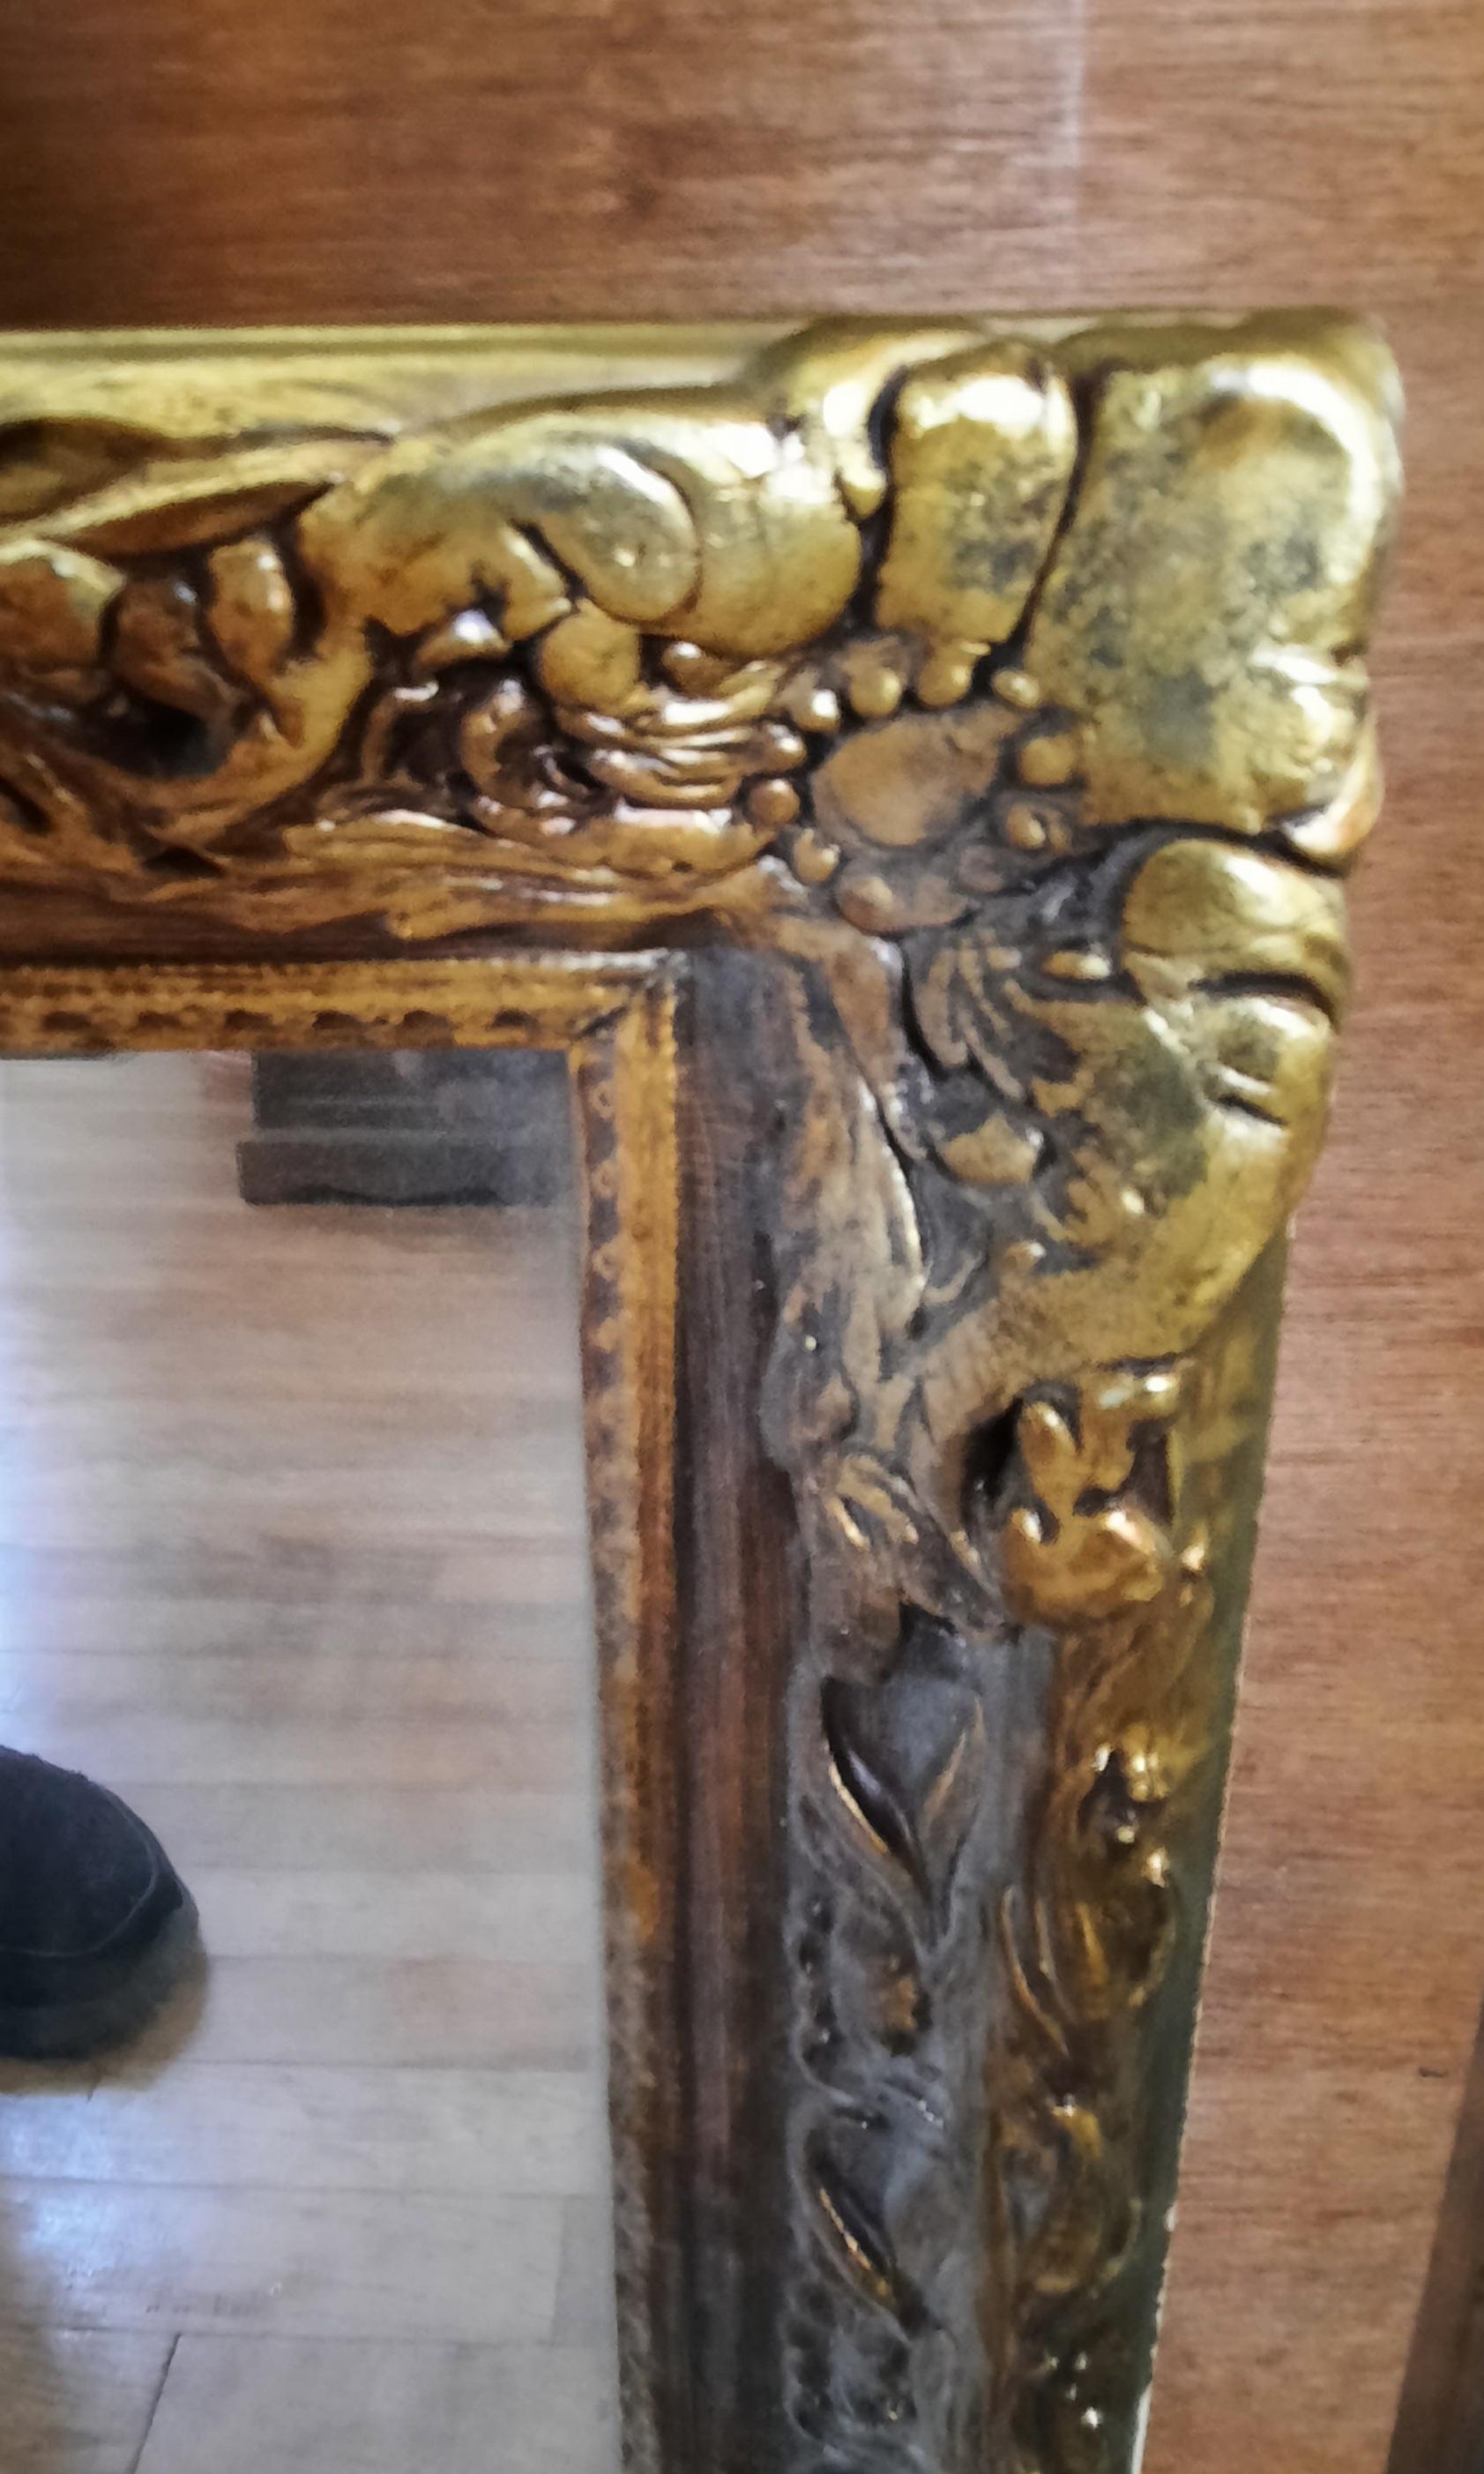 Miroir à cadre en bois doré de style Louis XV.
Bon état vintage. Mesure 38,5